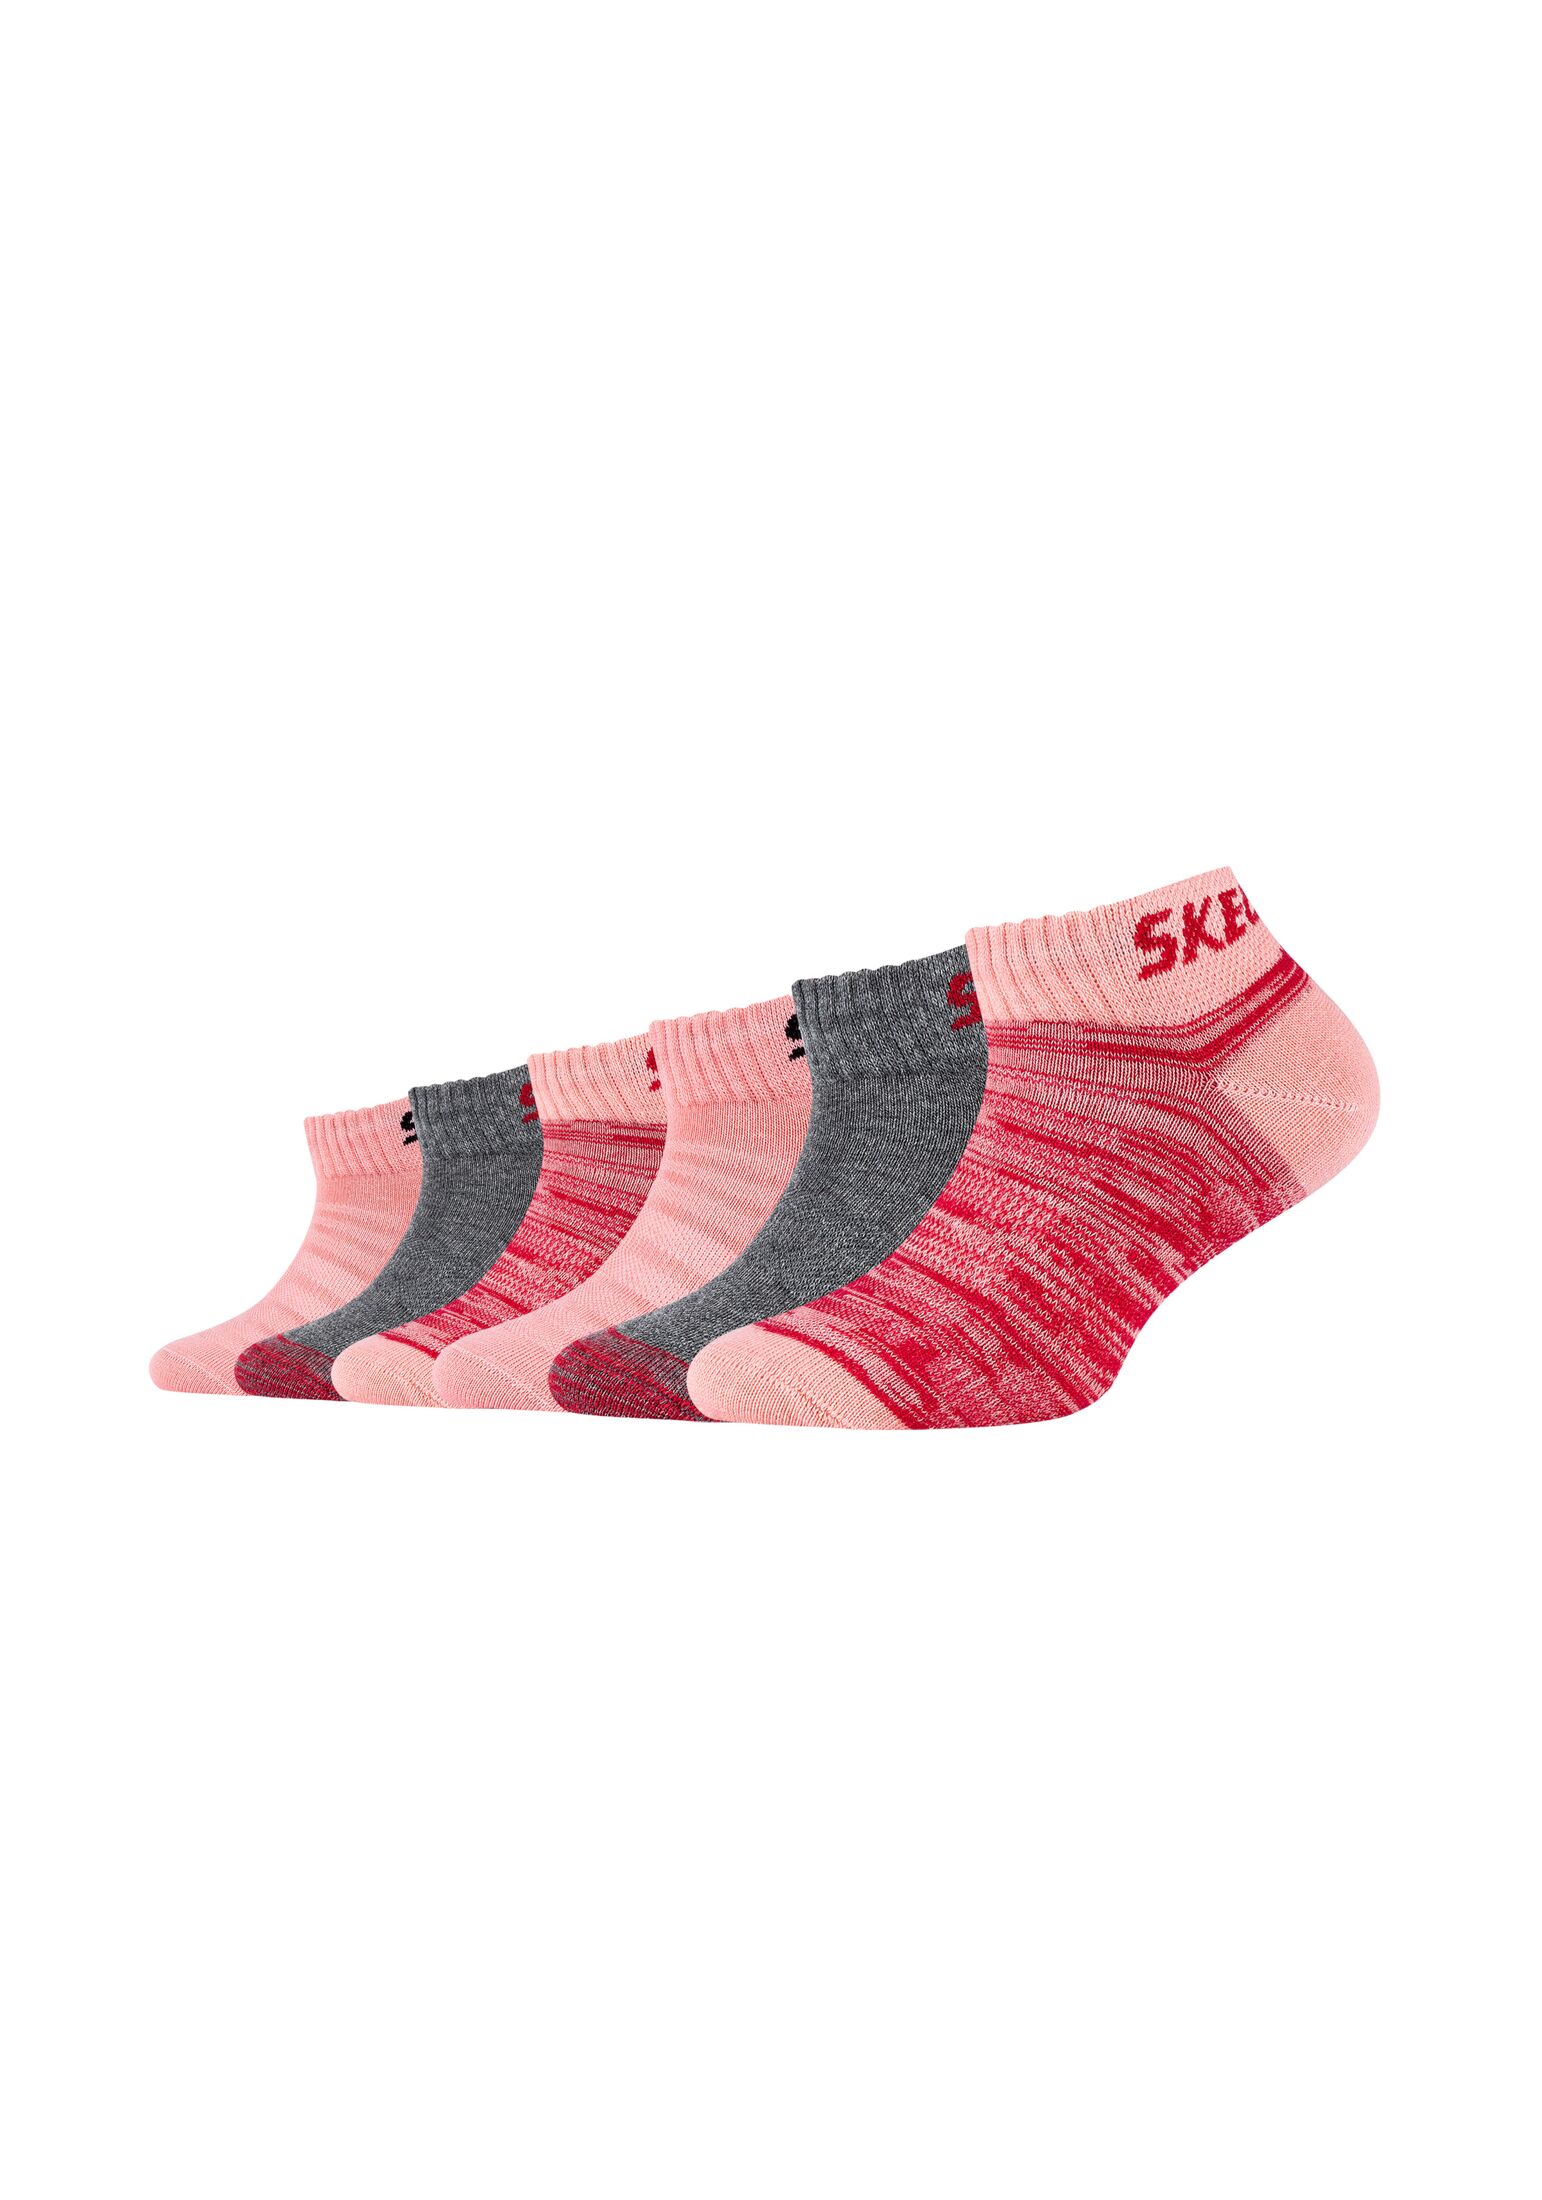 Носки Skechers Sneaker 6 шт mesh ventilation, цвет flamingo mix носки skechers sneaker 6 шт mesh ventilation цвет pink glow mix